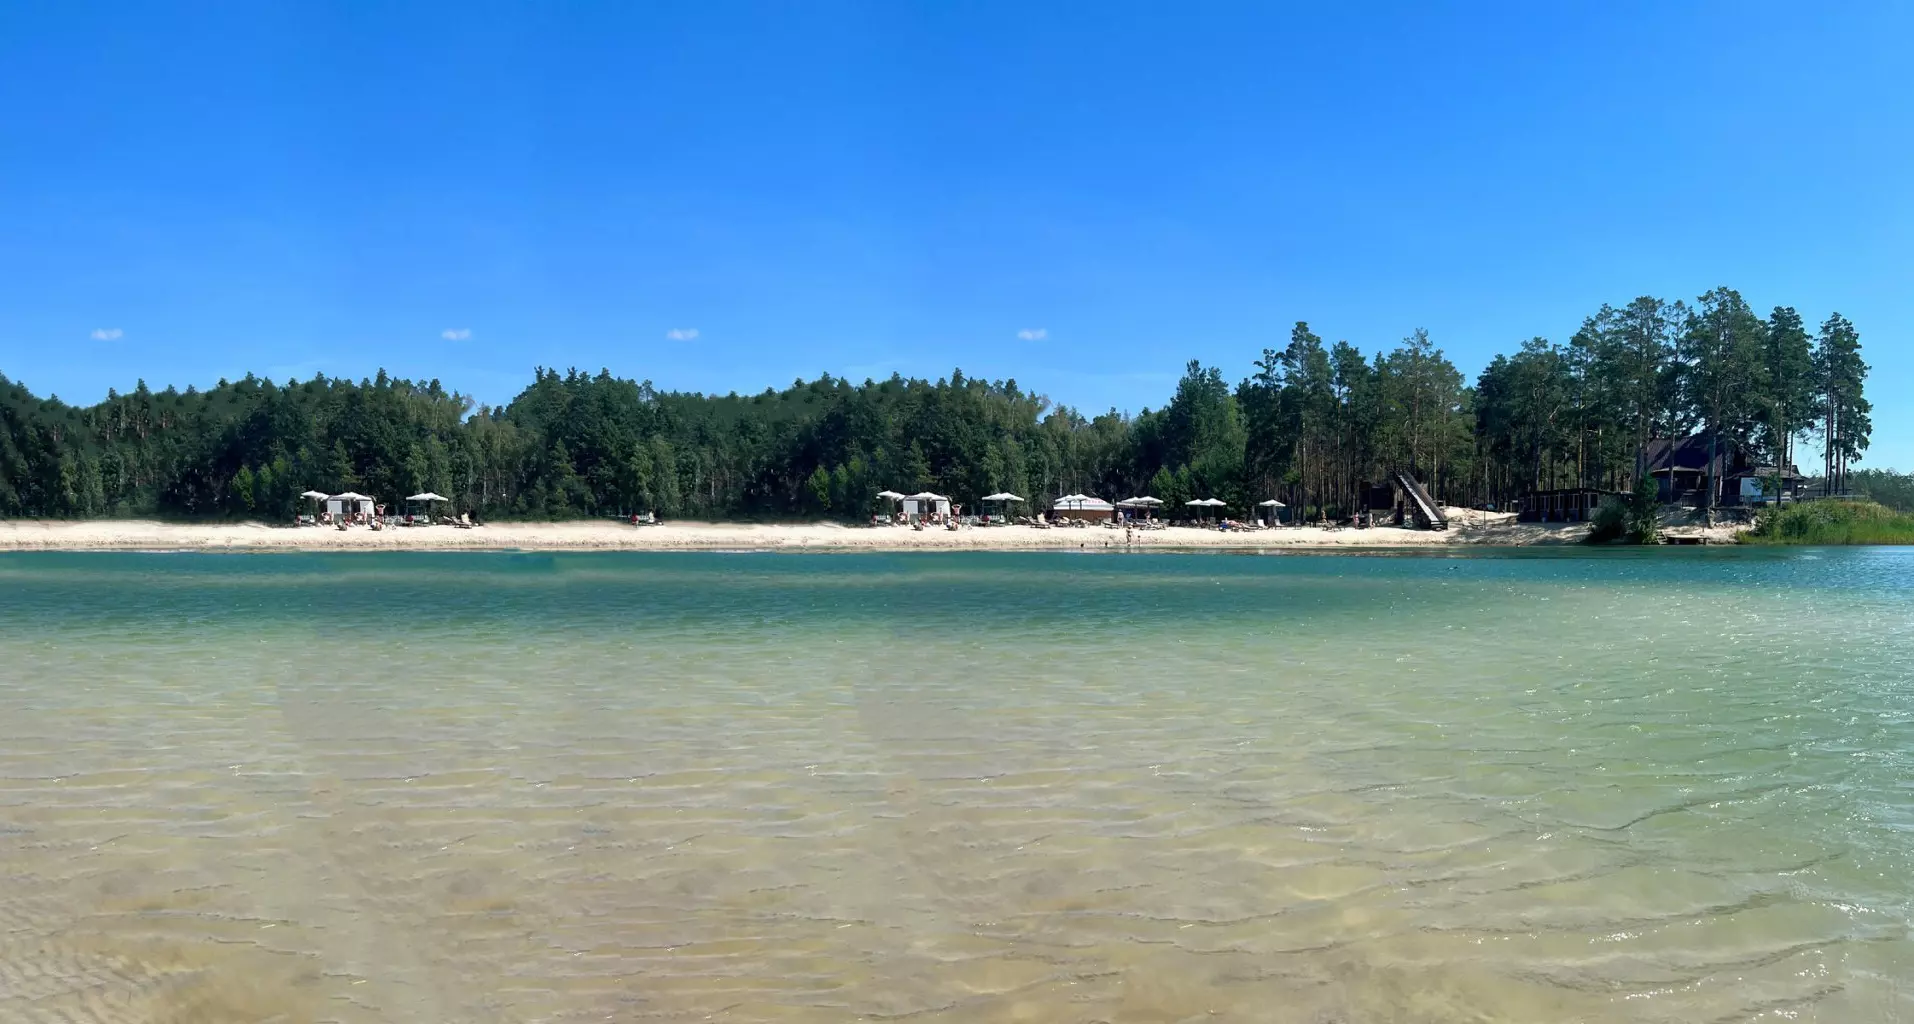 Голубое озеро и белый песок — идеальный союз для жаркого лета. Где найти такой пляж в Тюмени?